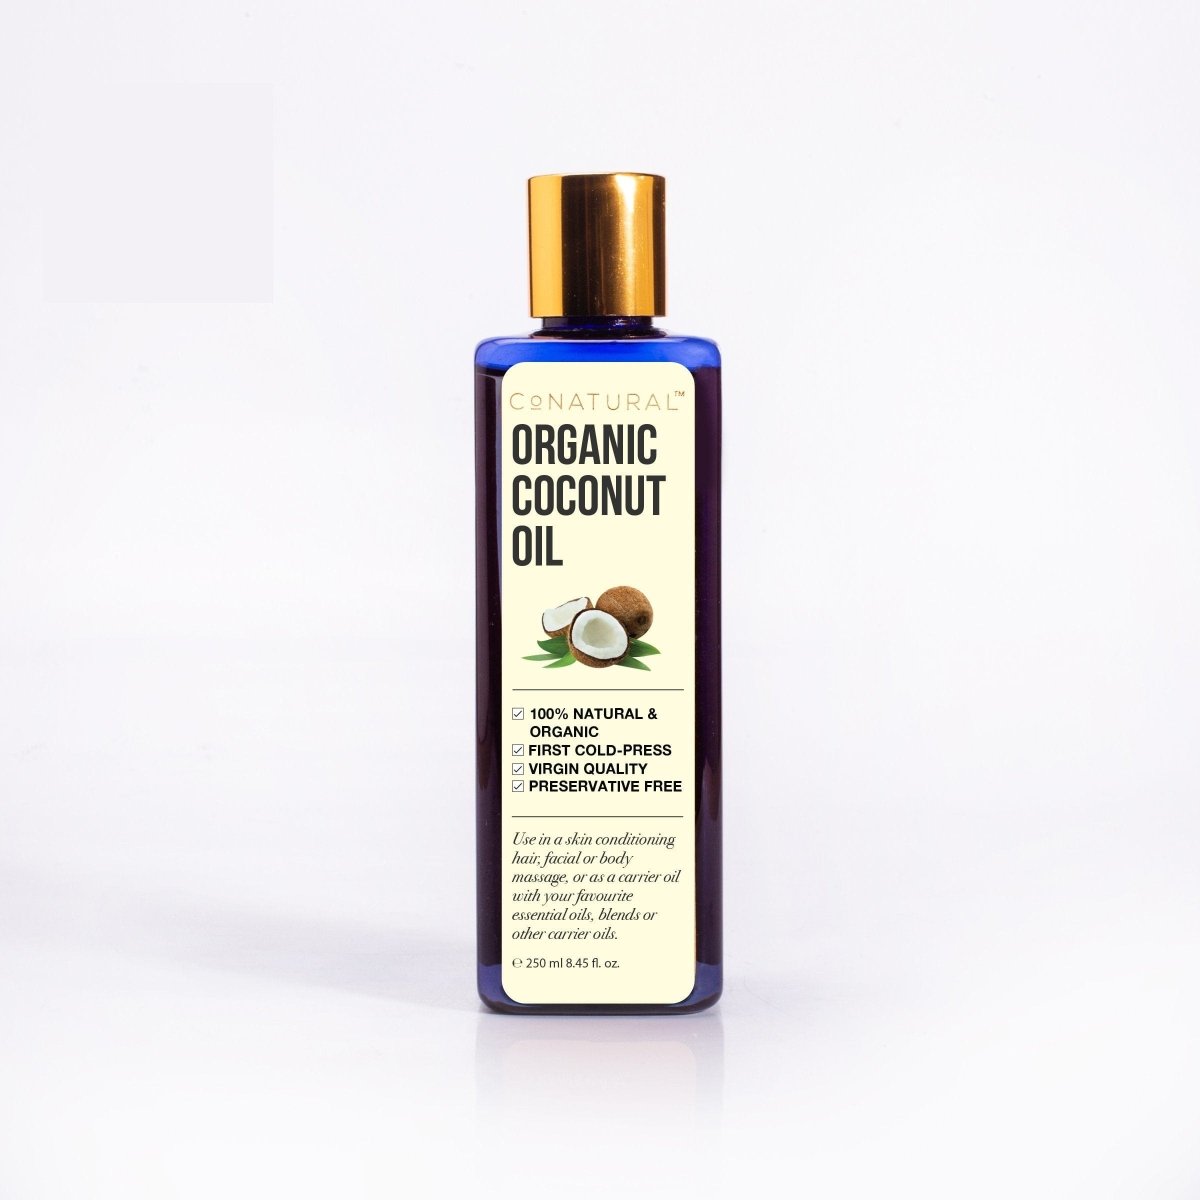 CoNatural Organic Coconut Oil